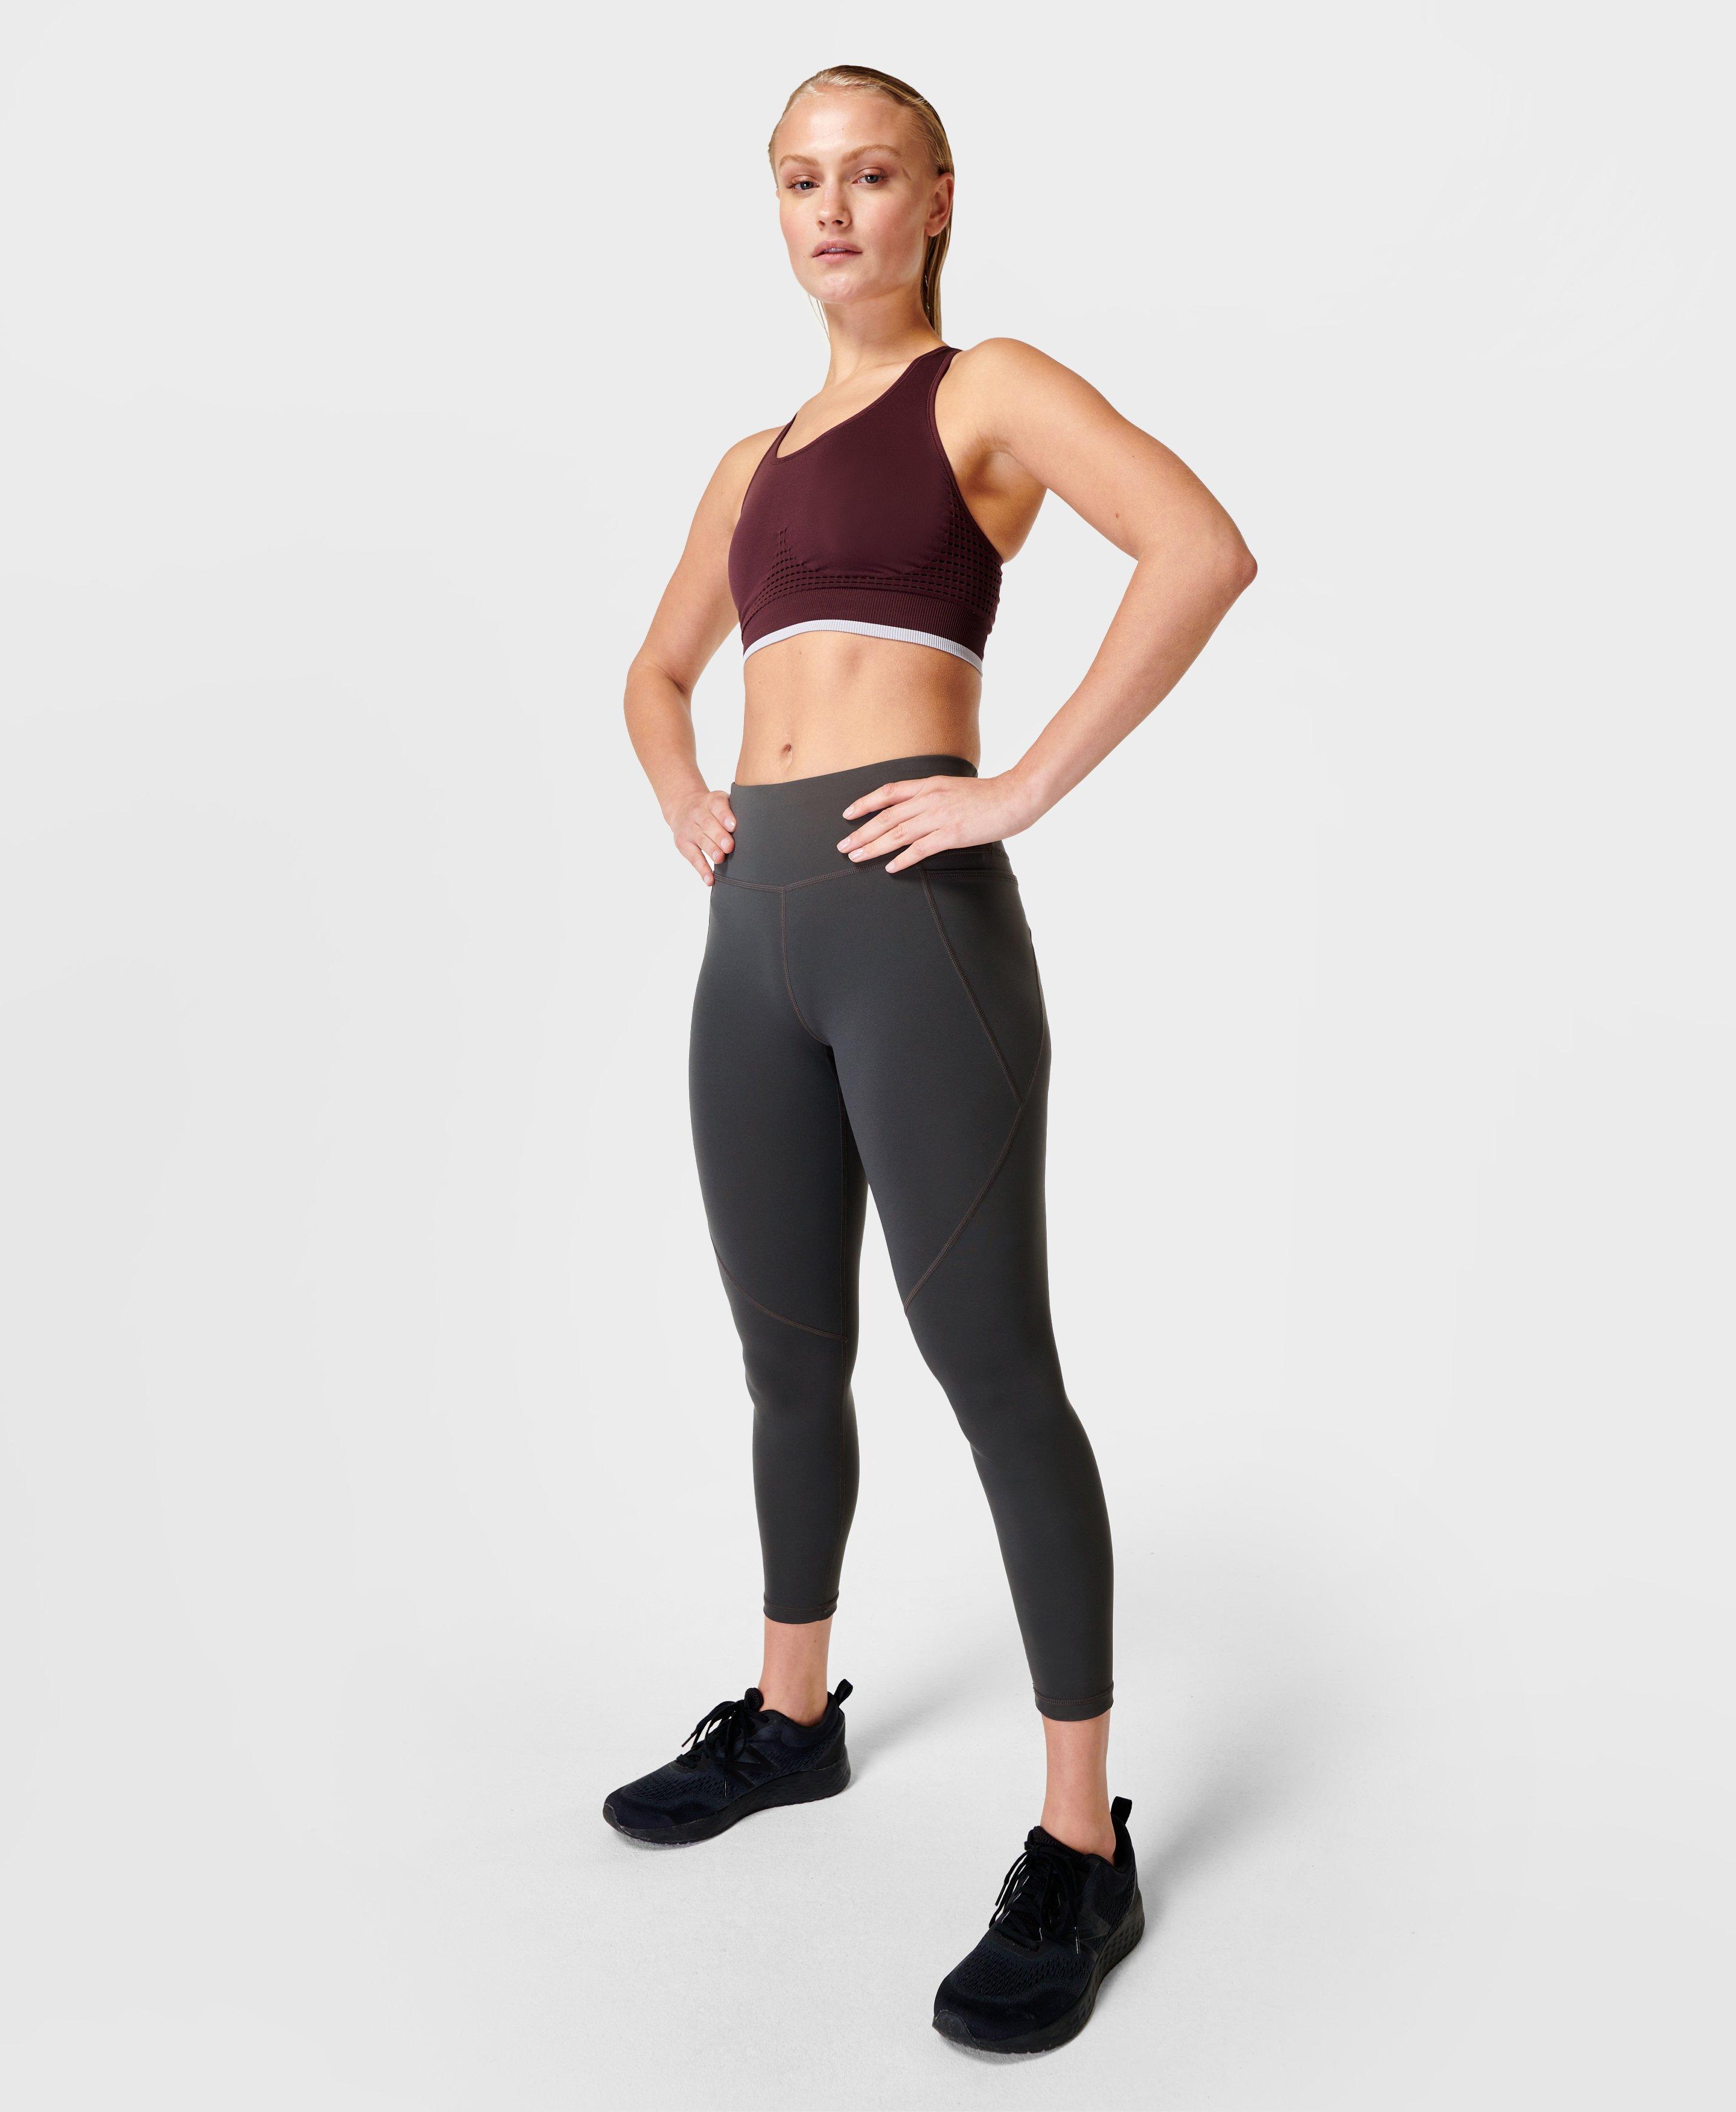 Sweaty Betty Women's S Power Leggings Workout Slate Gray 7/8 Length SB5400  for sale online